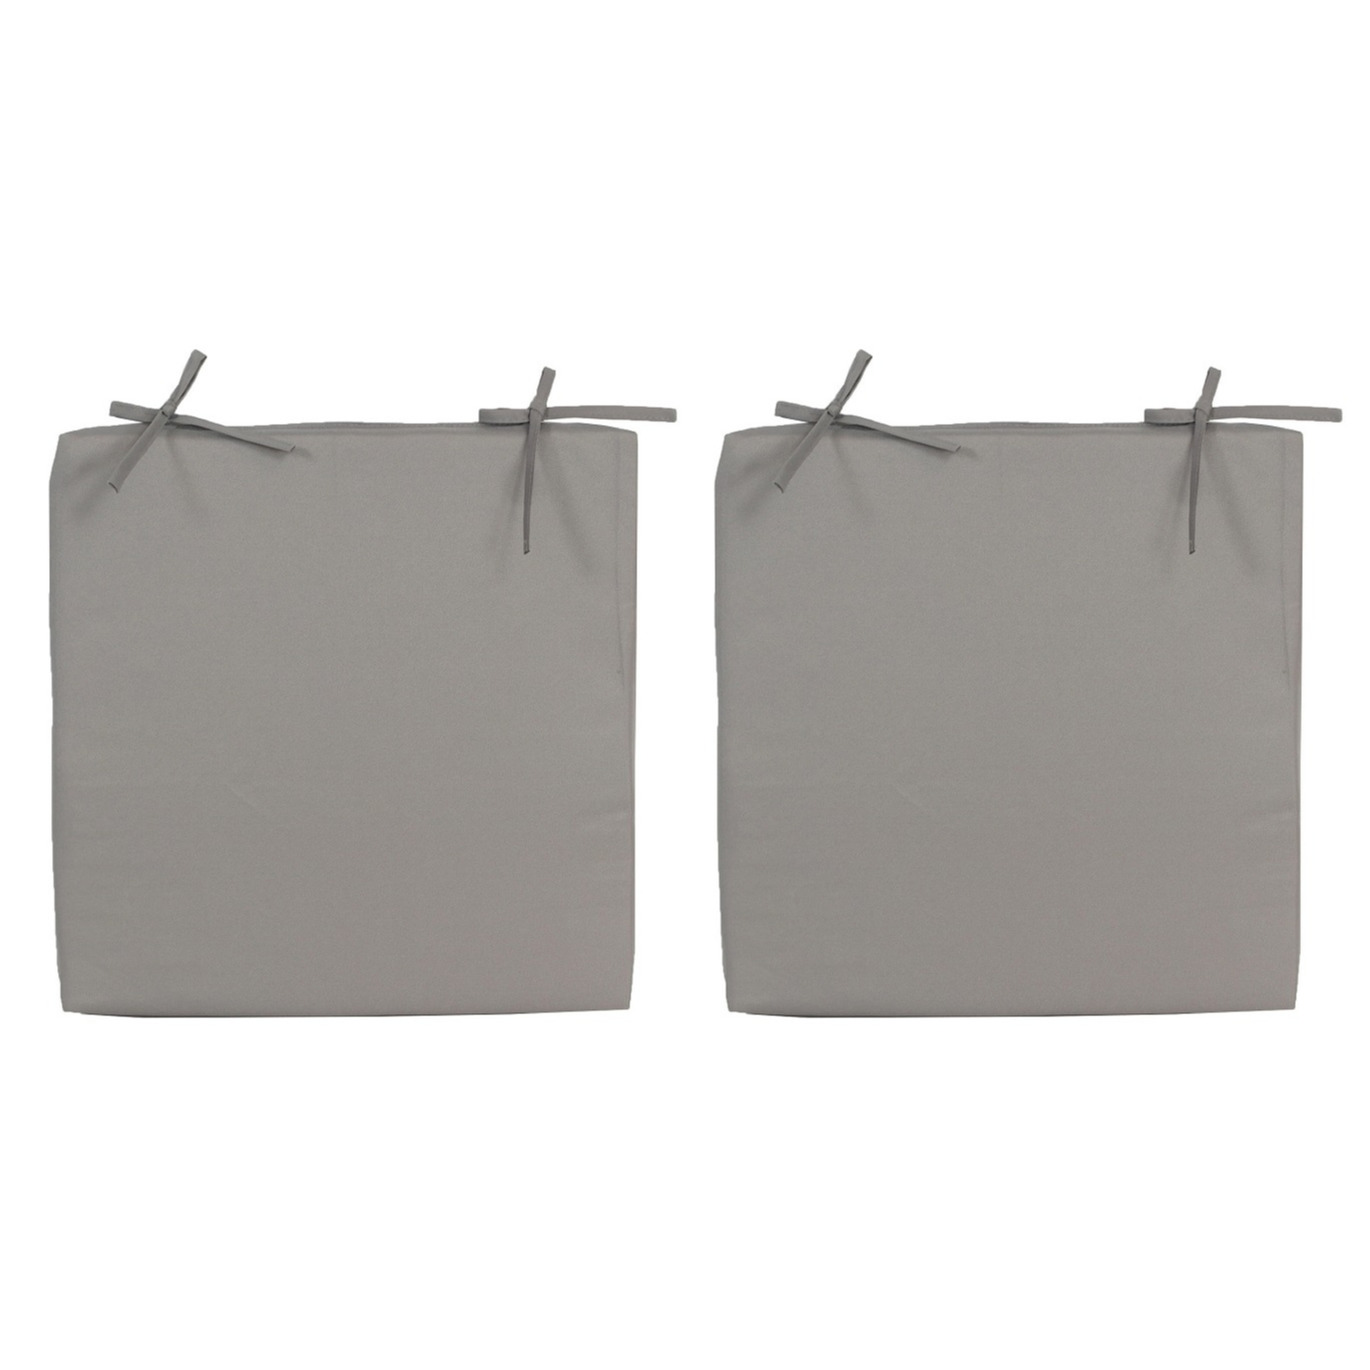 6x Stoelkussens voor binnen en buiten in de kleur grijs 40 x 40 cm Tuinkussens voor buitenstoelen.